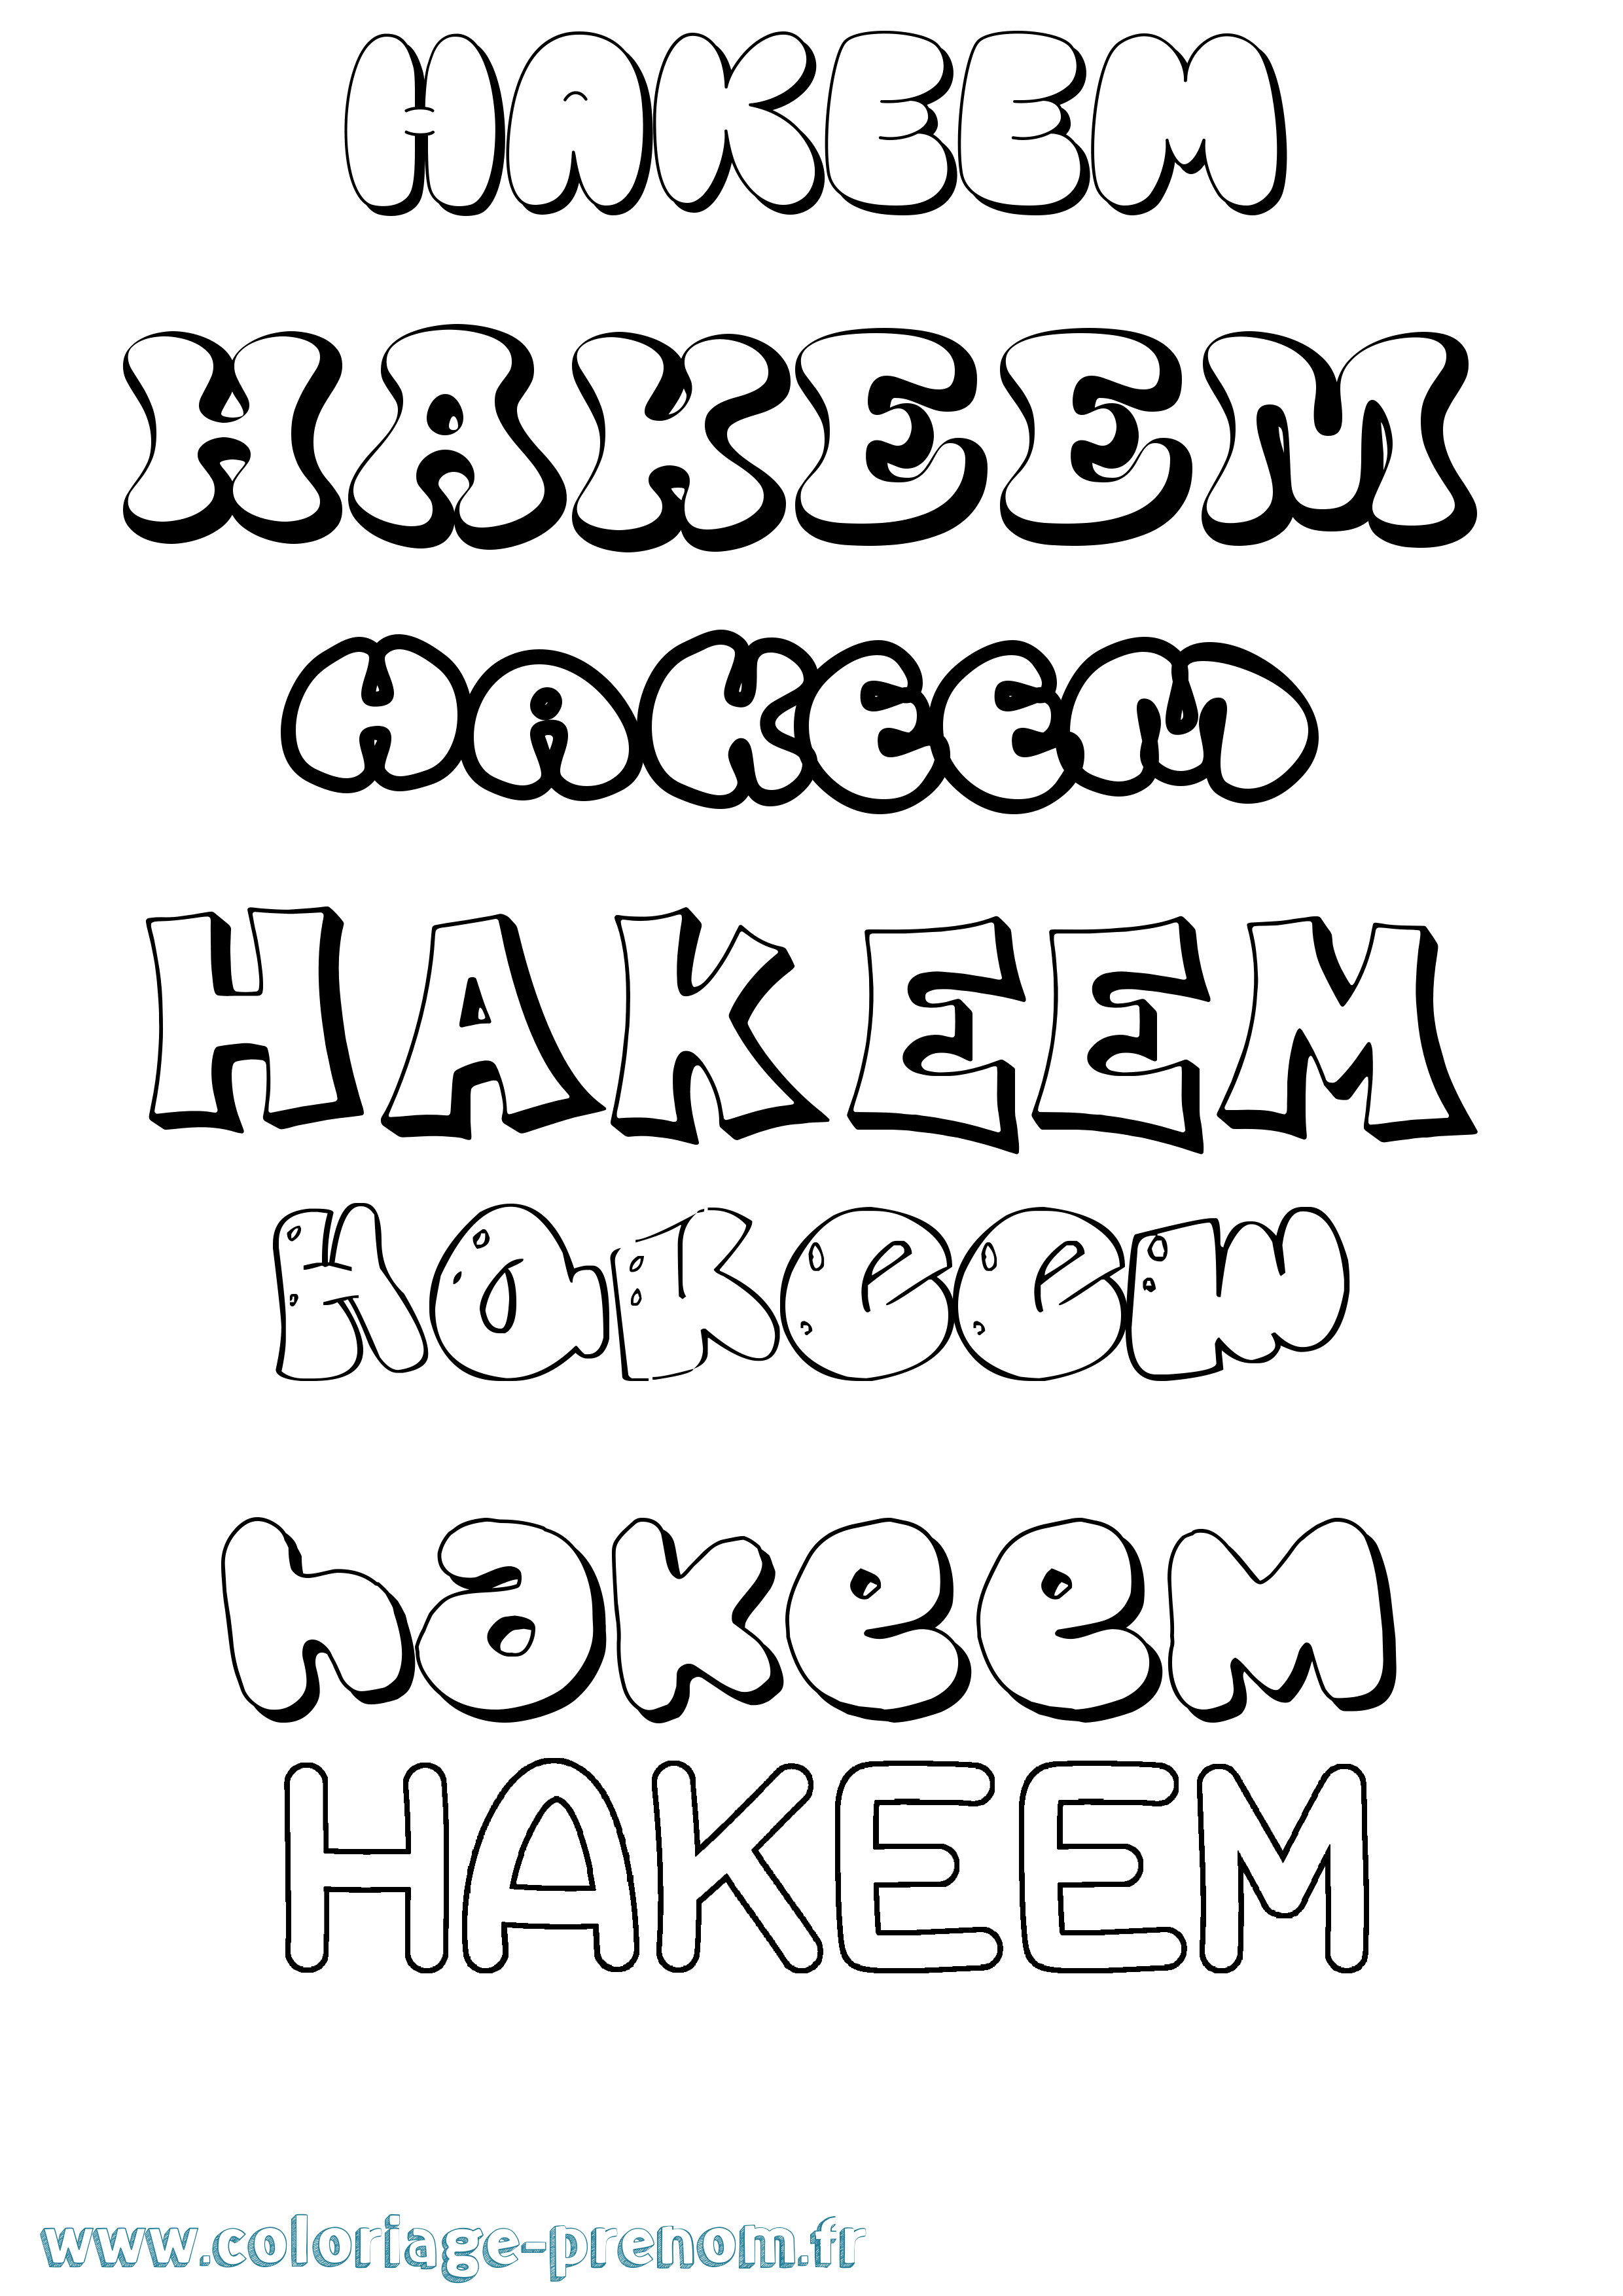 Coloriage prénom Hakeem Bubble